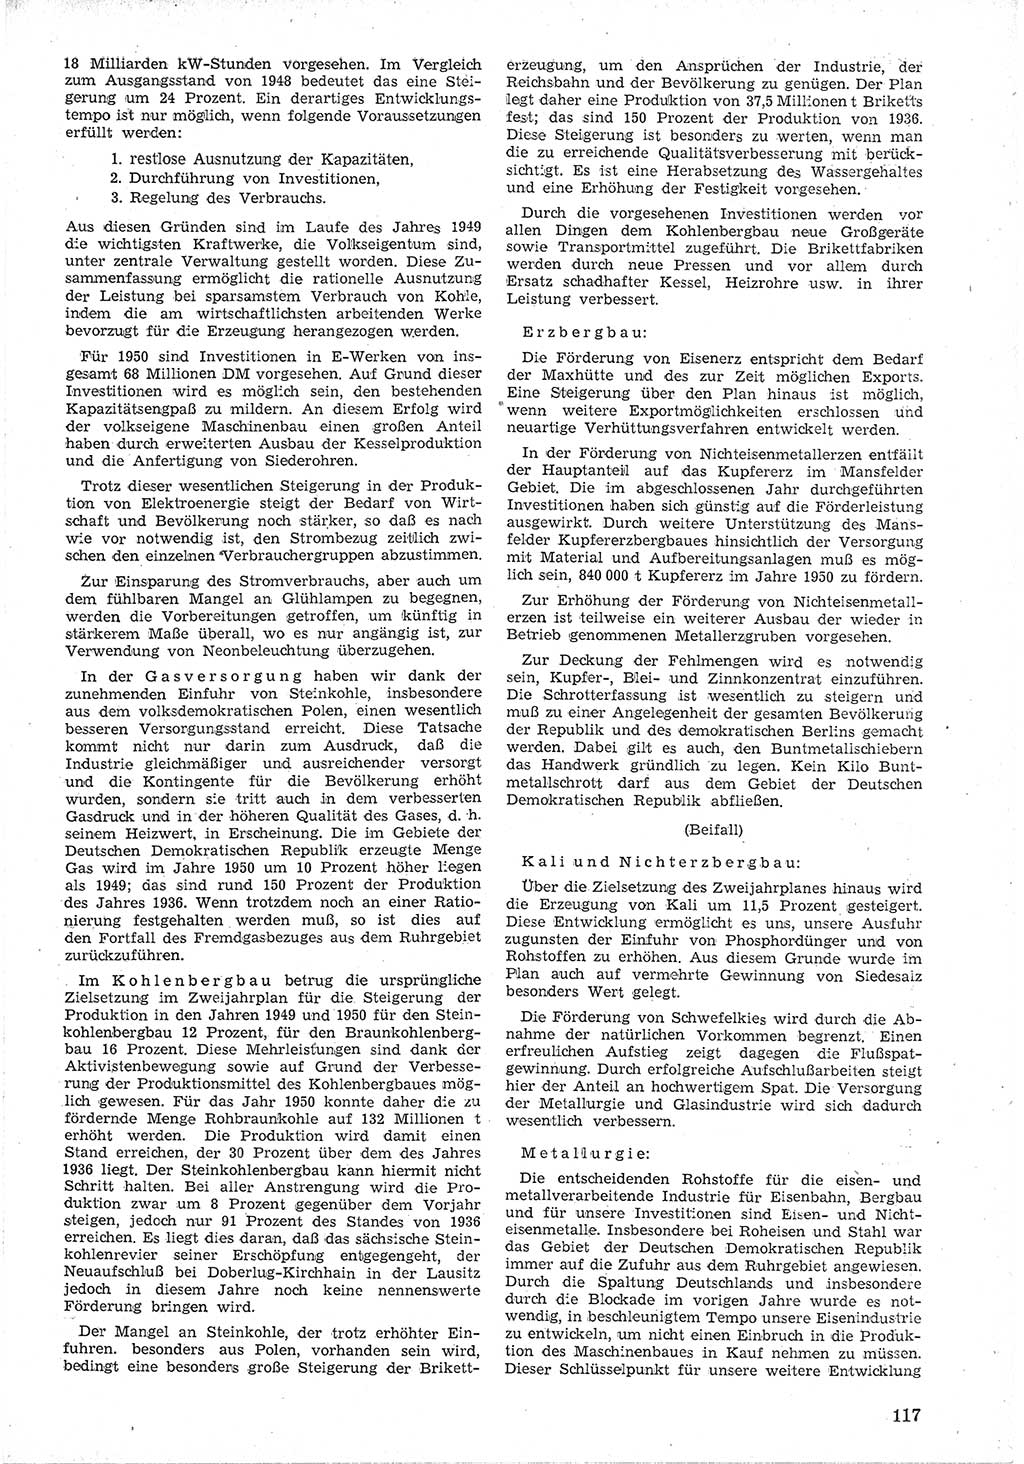 Provisorische Volkskammer (VK) der Deutschen Demokratischen Republik (DDR) 1949-1950, Dokument 129 (Prov. VK DDR 1949-1950, Dok. 129)